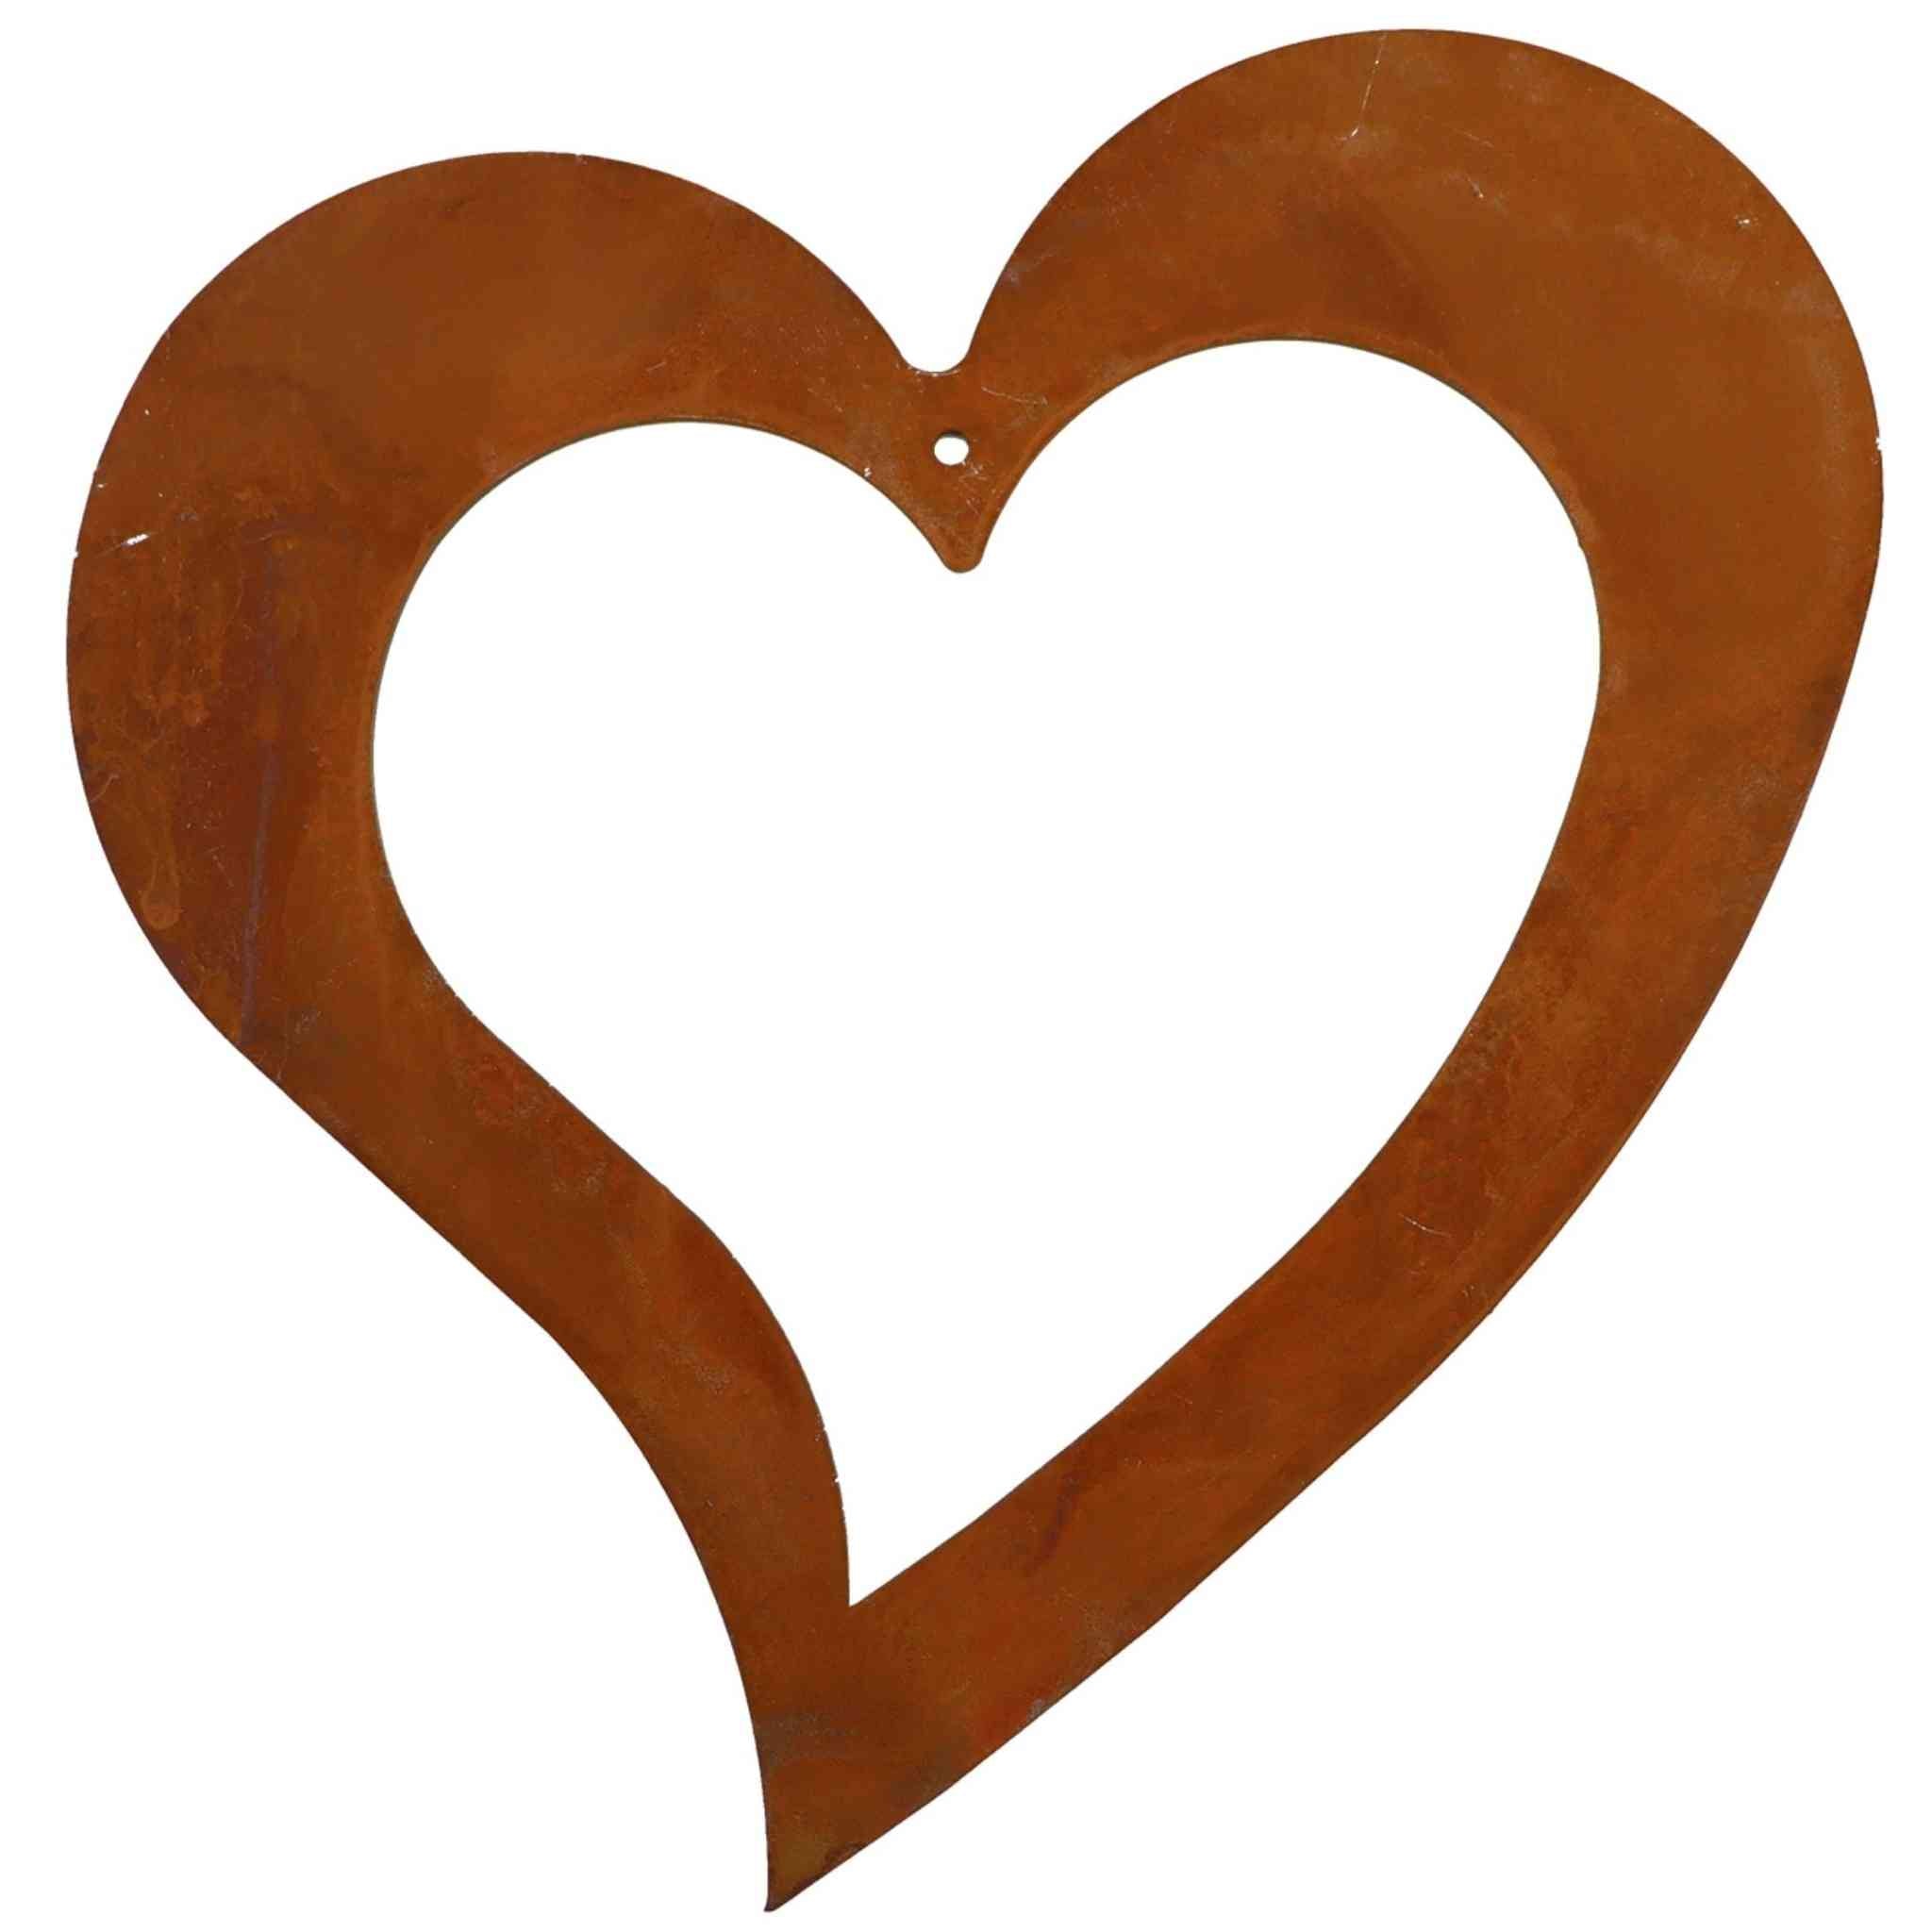 Hochwertiges Metall Herz zum Hängen mit handgefertigter Rostpatina als dekorative Wanddekoration oder als stilvolles Wohnaccessoire.